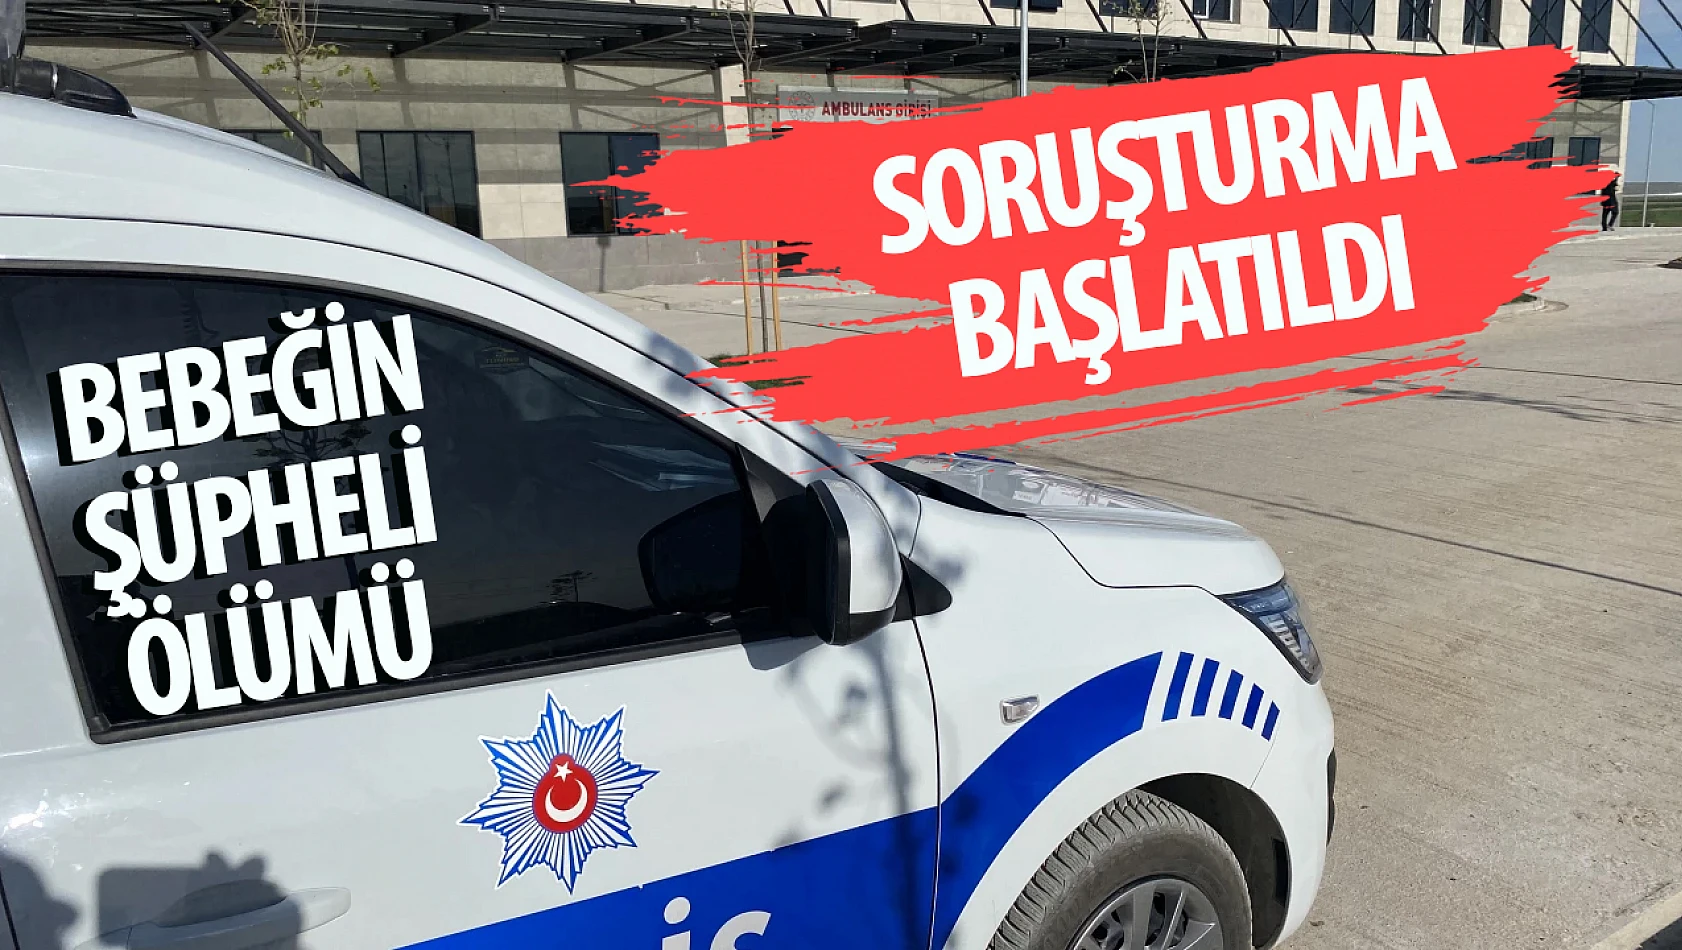 Konya'da  bir bebeğin şüpheli ölümü: Soruşturma başlatıldı!